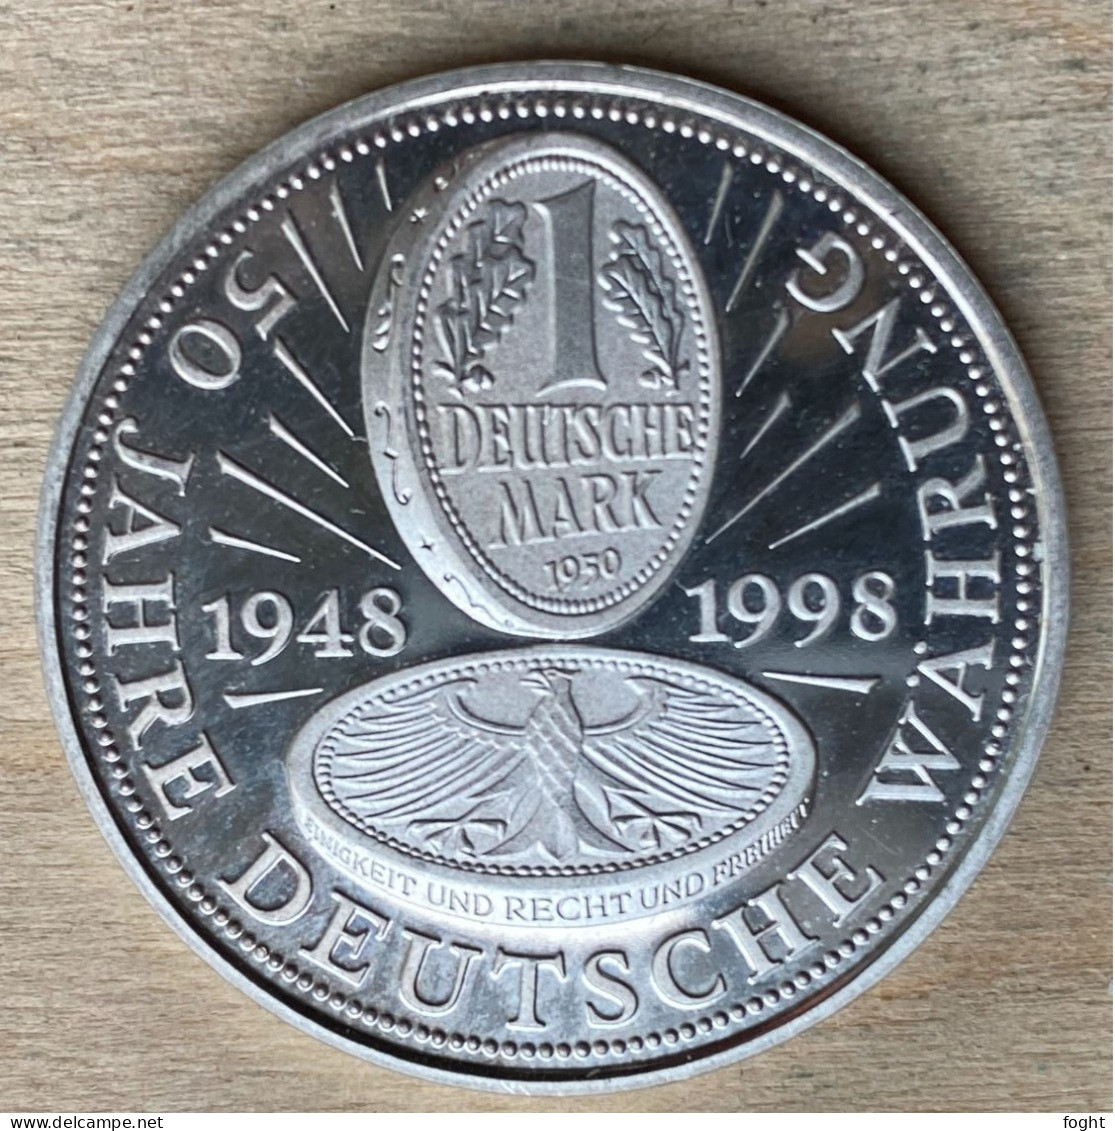 1998 Germany /BRD Medaille  50 Jahre Deutsche Währung .500 Silber,PP,7225 - Firma's